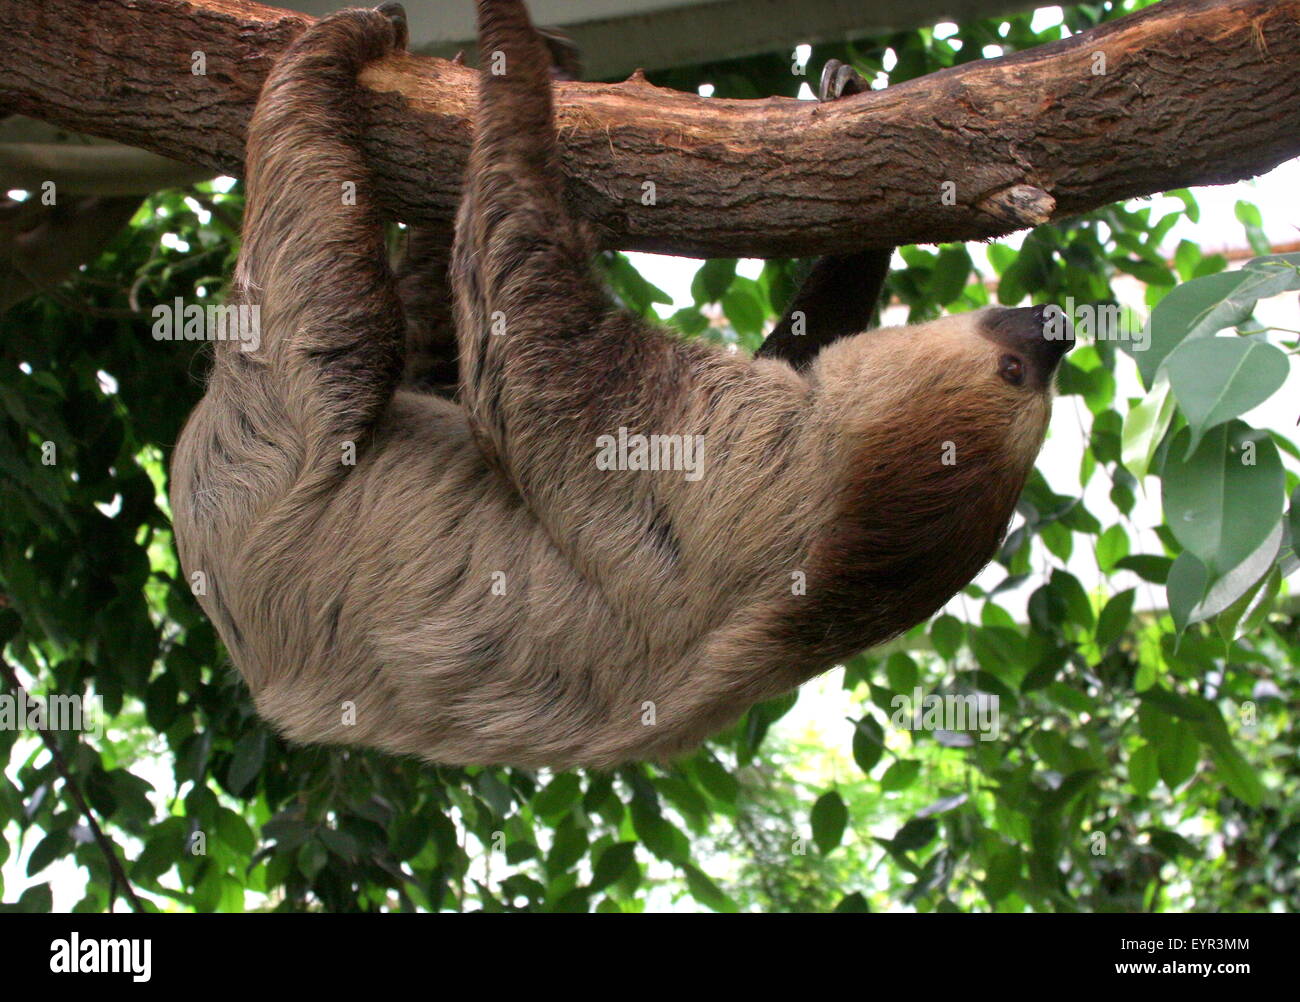 L'Amérique du Sud deux orteils, sloth Linné ou dans le sud de deux doigts (Choloepus didactylus) paresseux Banque D'Images